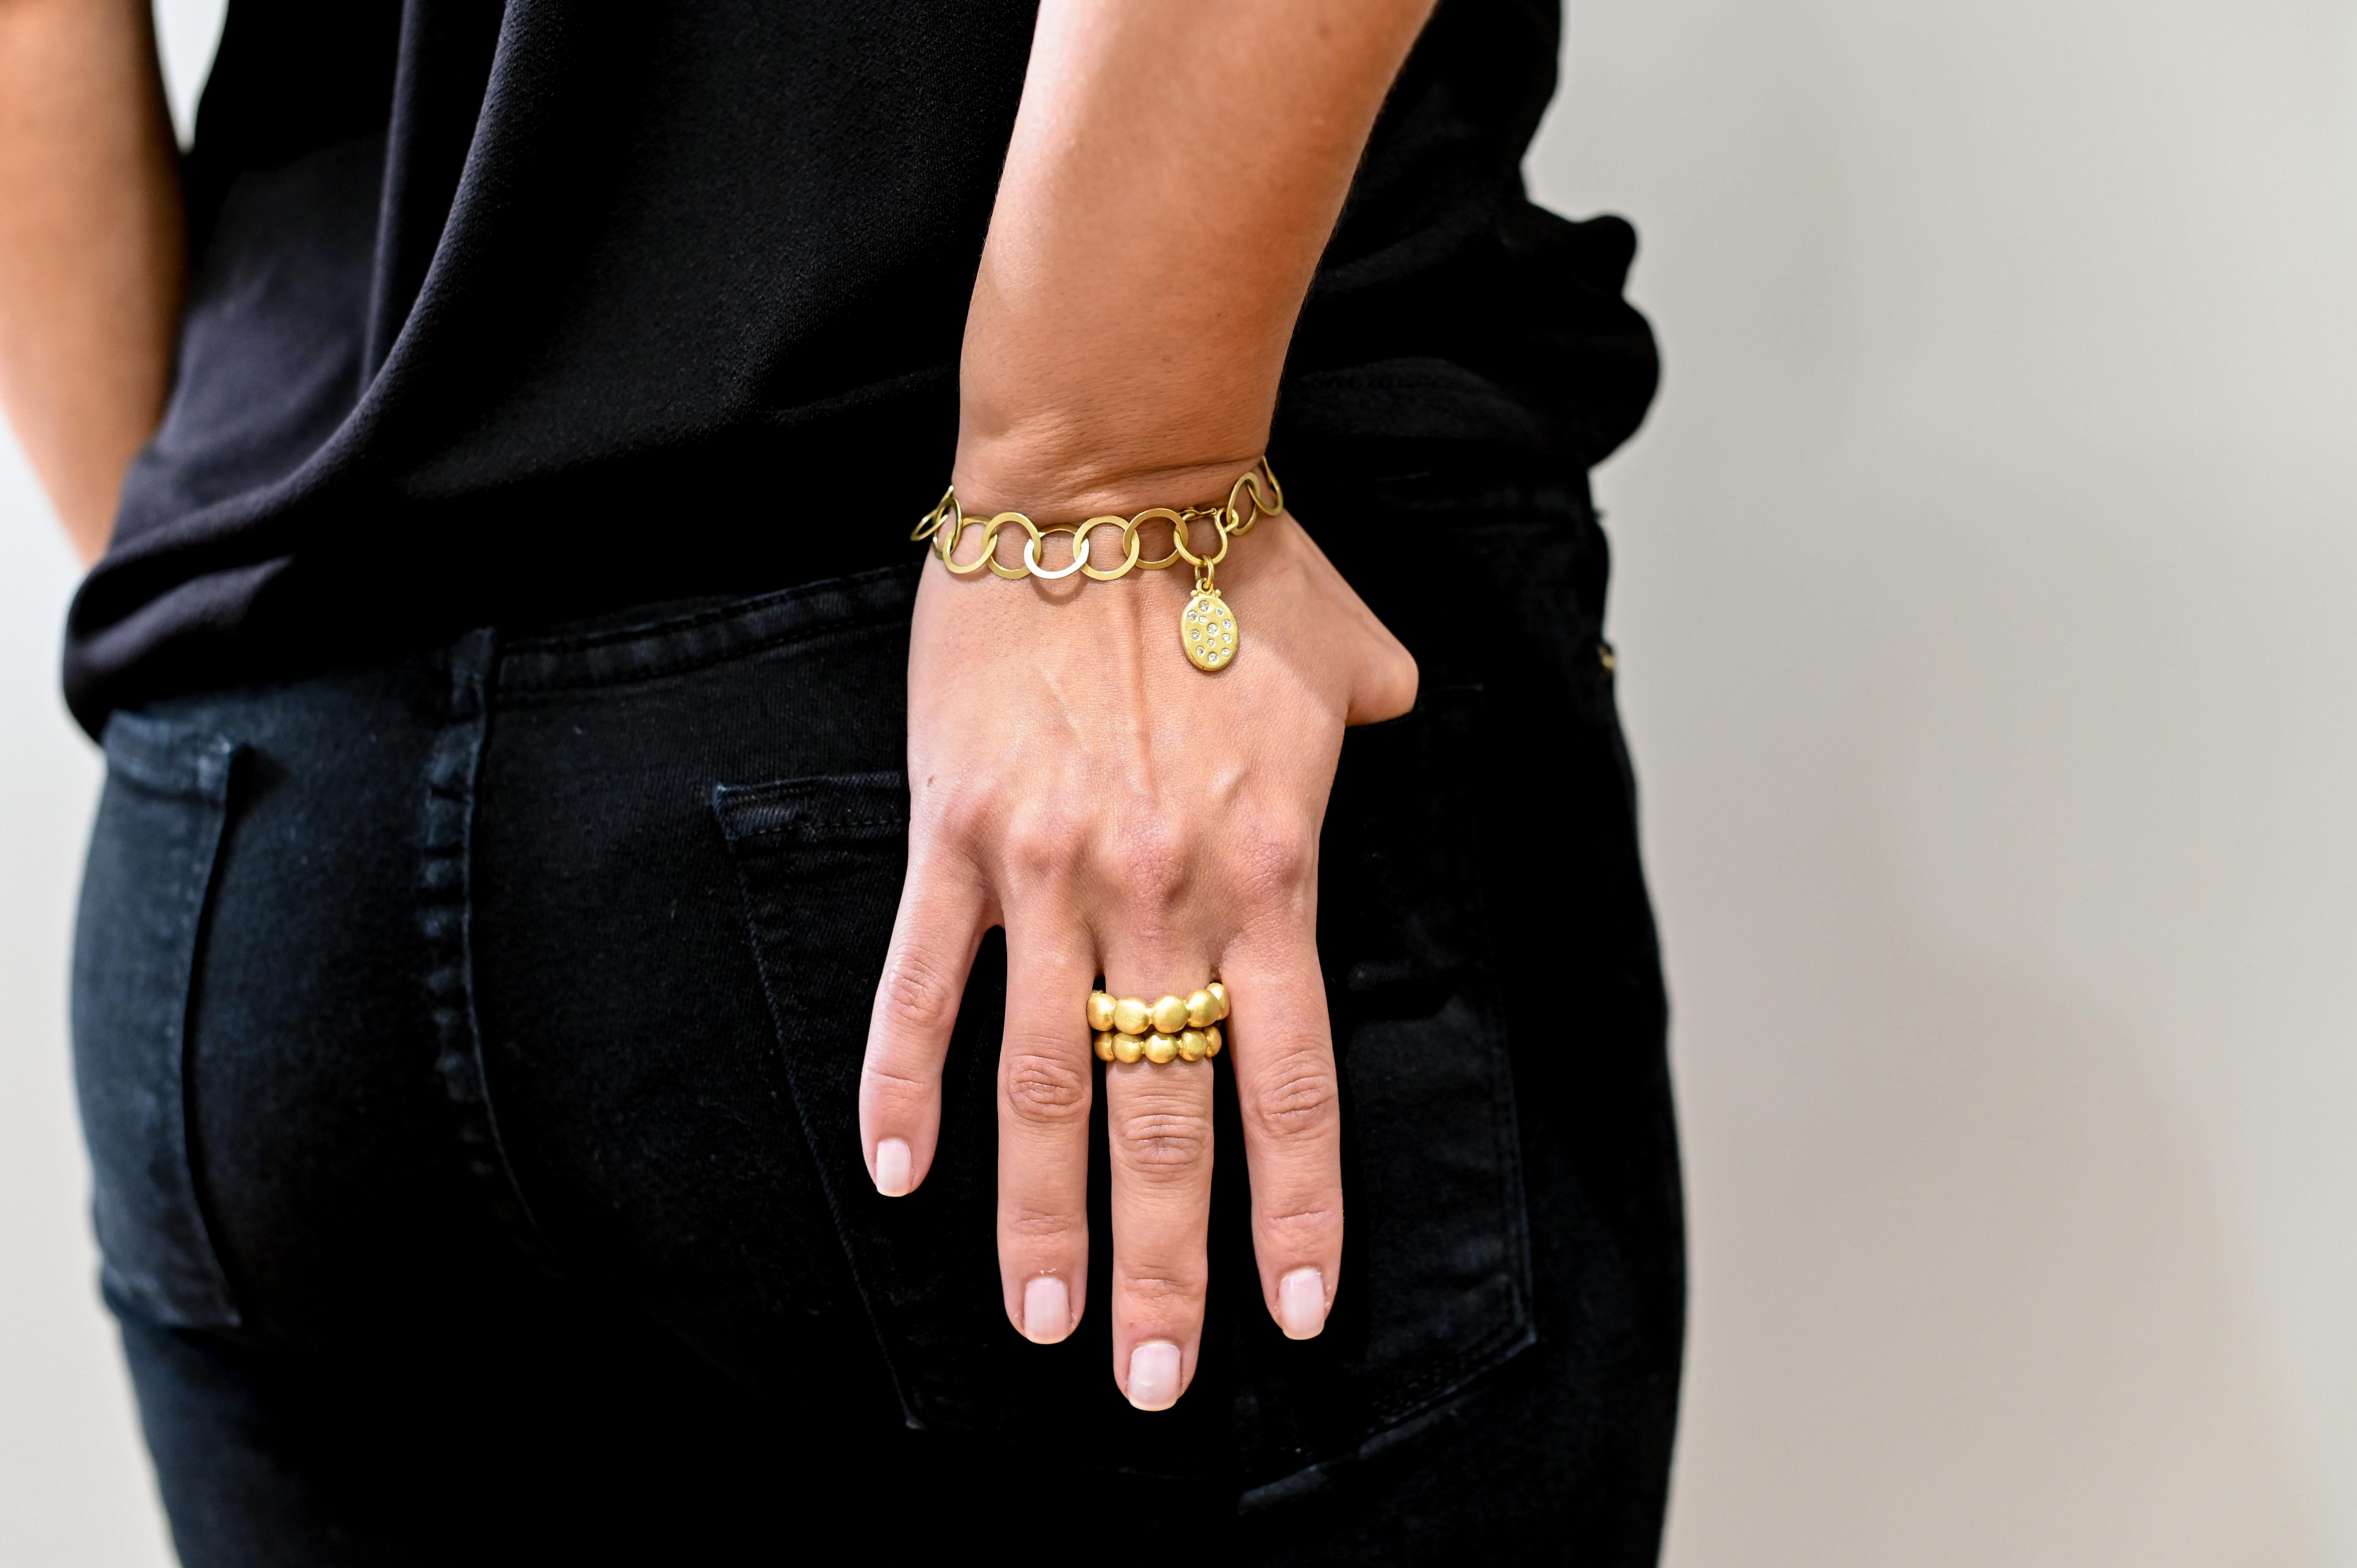 Das handgefertigte Armband aus 18-karätigem Grüngold von Faye Kim ist mit einer mattierten Oberfläche versehen, die für einen frischen, modernen Look sorgt. Der Sicherheitsverschluss sorgt für zusätzliche Sicherheit und kann für eine Vielzahl von